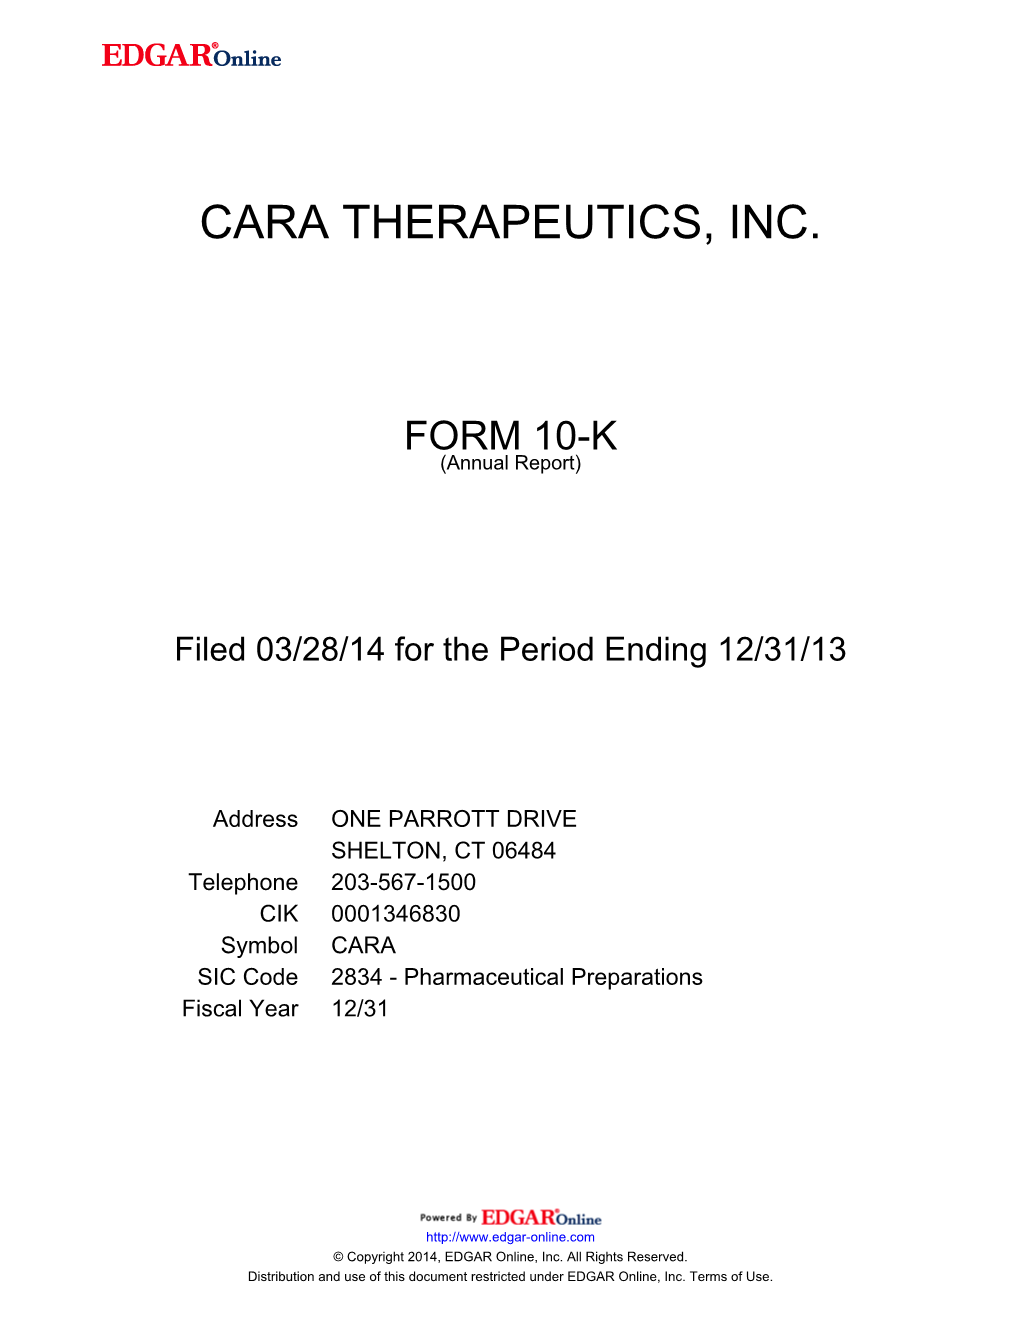 Cara Therapeutics, Inc